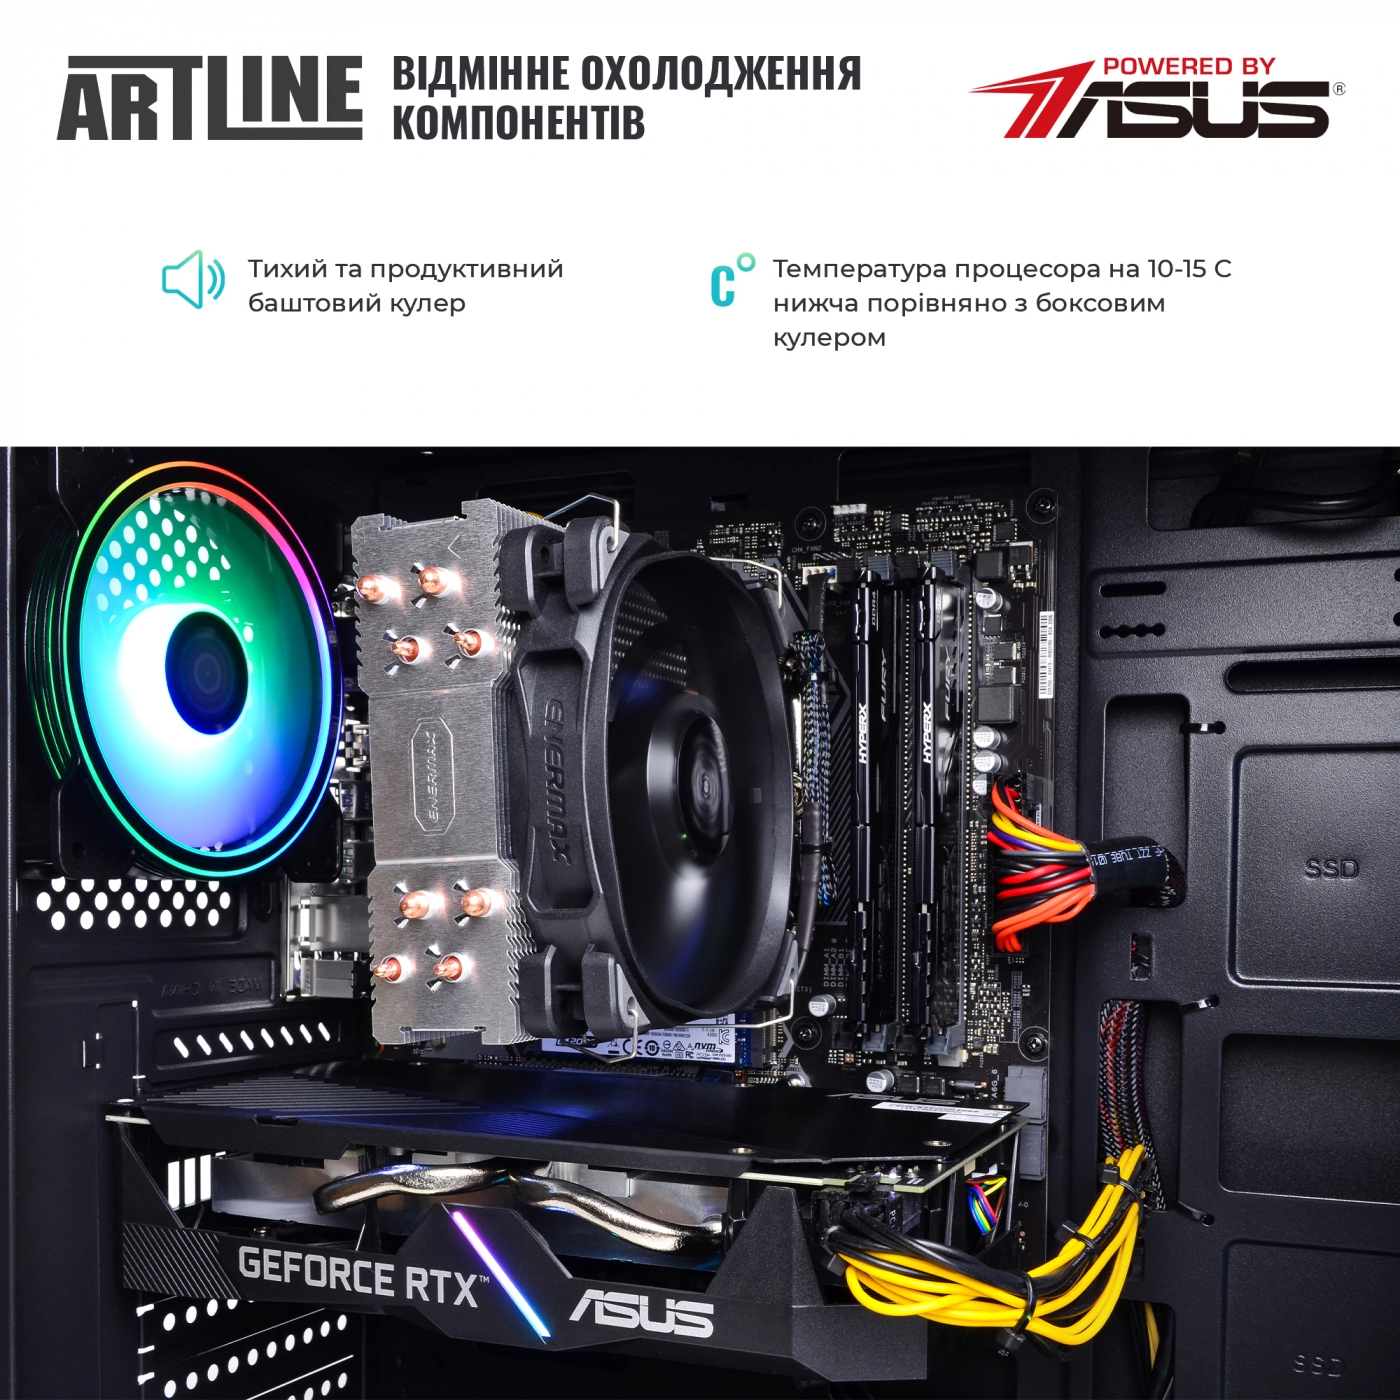 Купить Компьютер ARTLINE Gaming X57v40 - фото 7